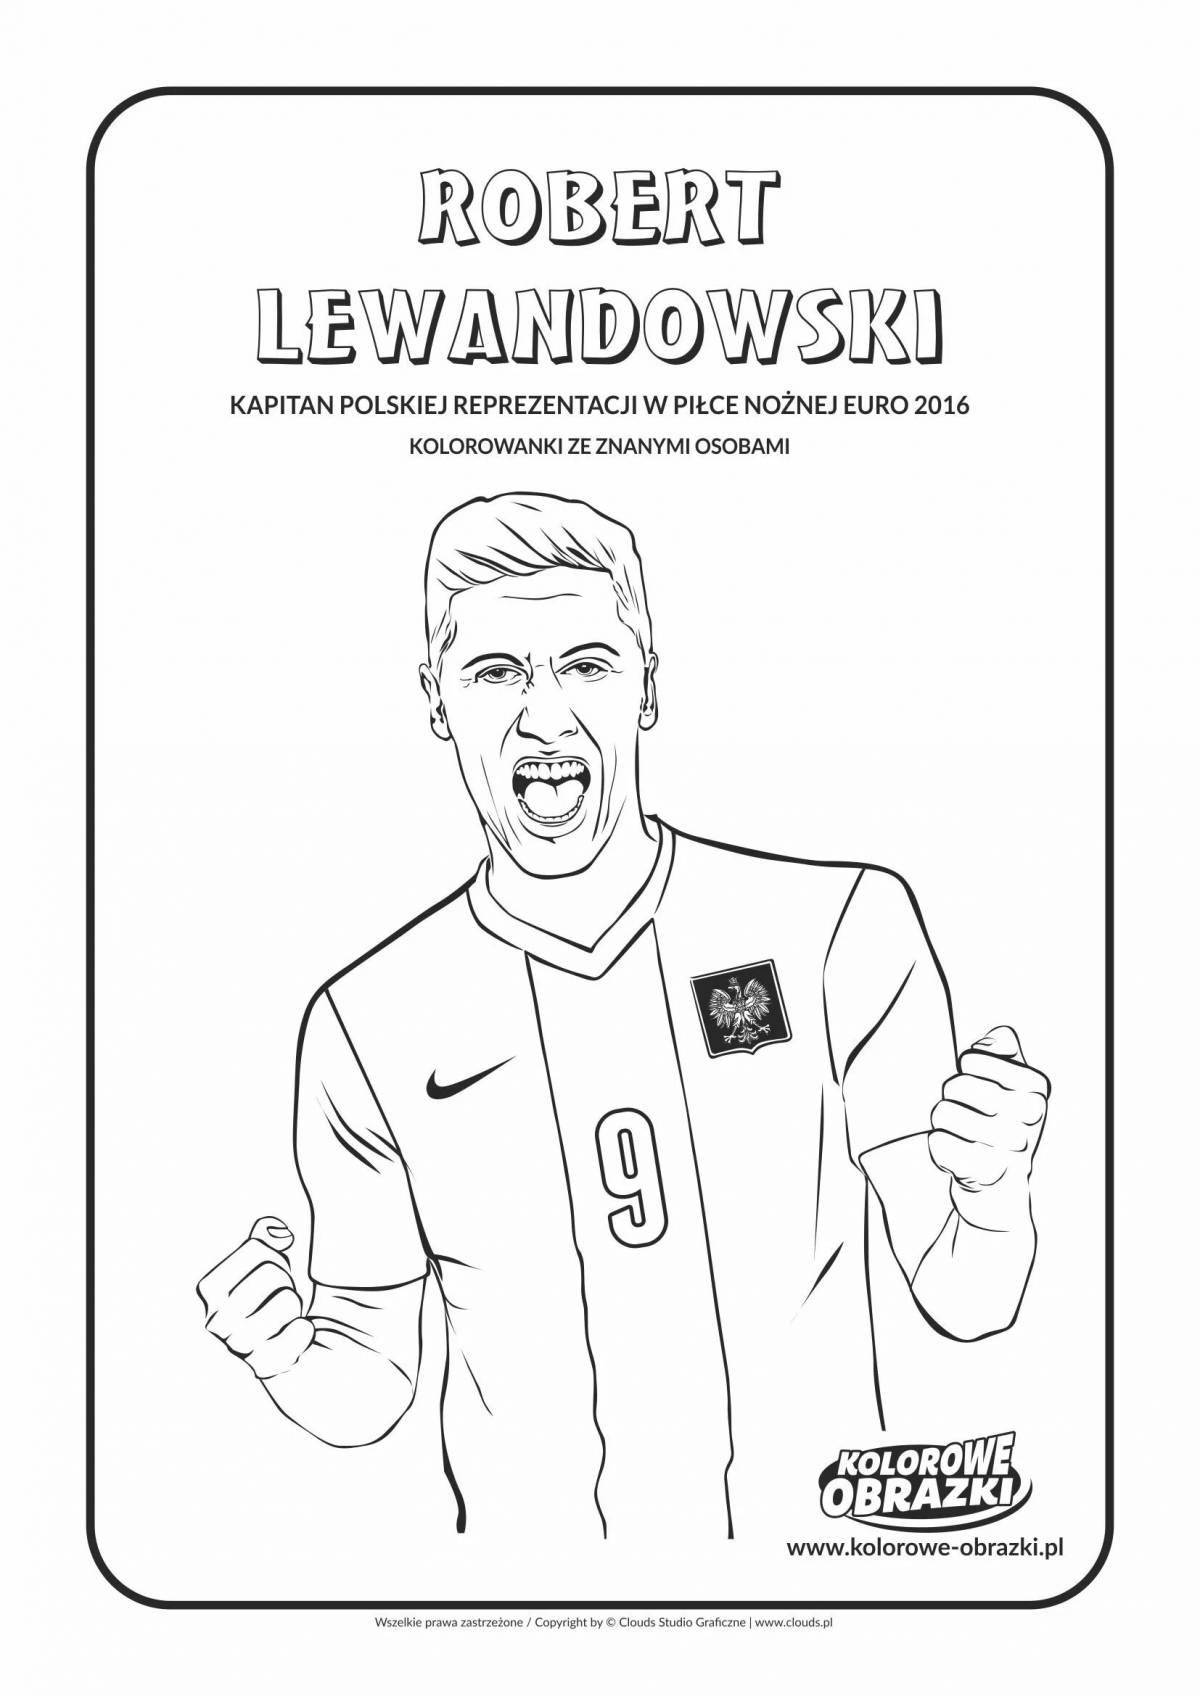 Great lewandowski coloring